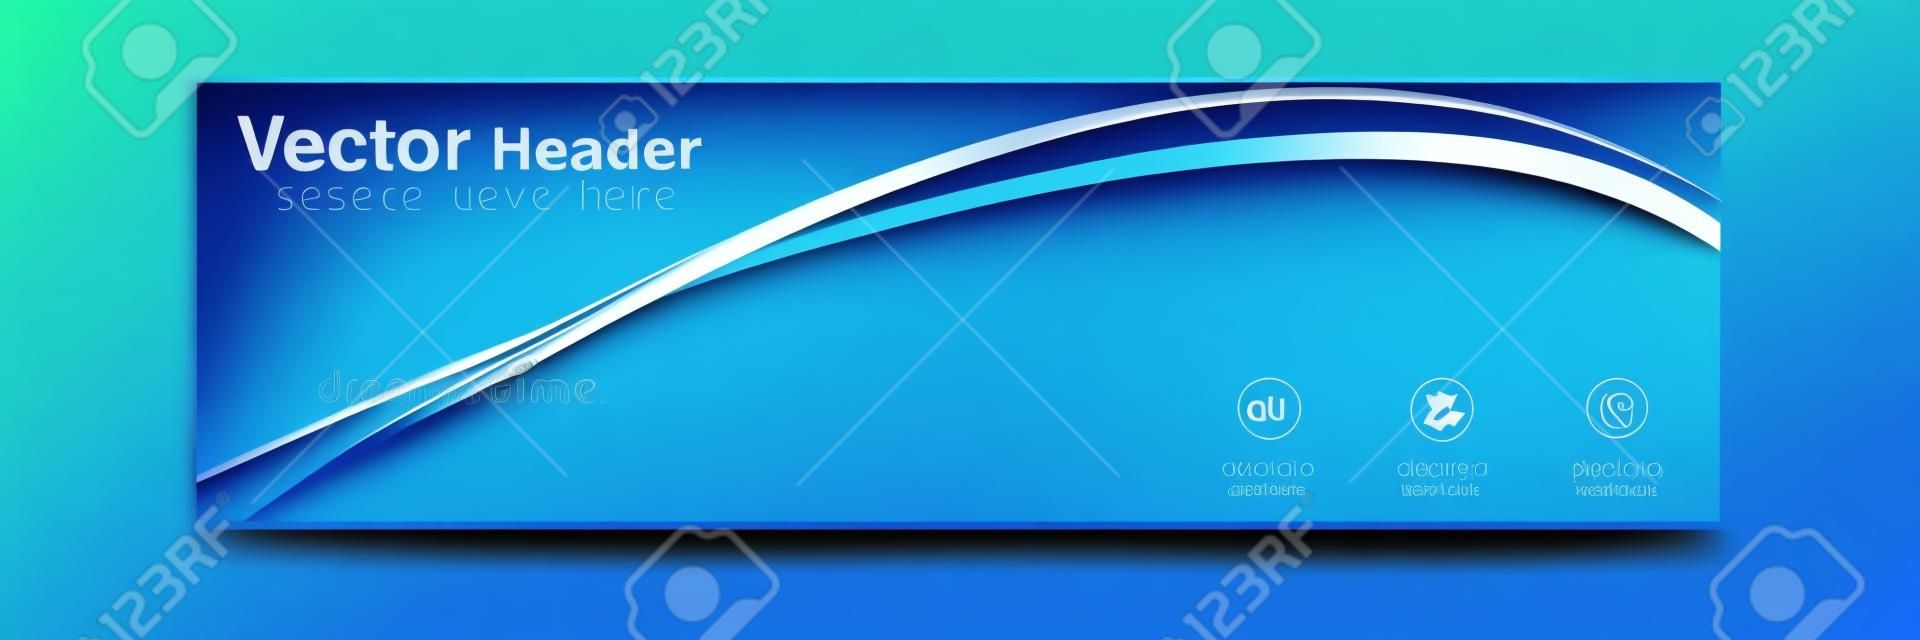 Abstrakter blauer Kurventitel-Design-Hintergrund-Vektor-Bild